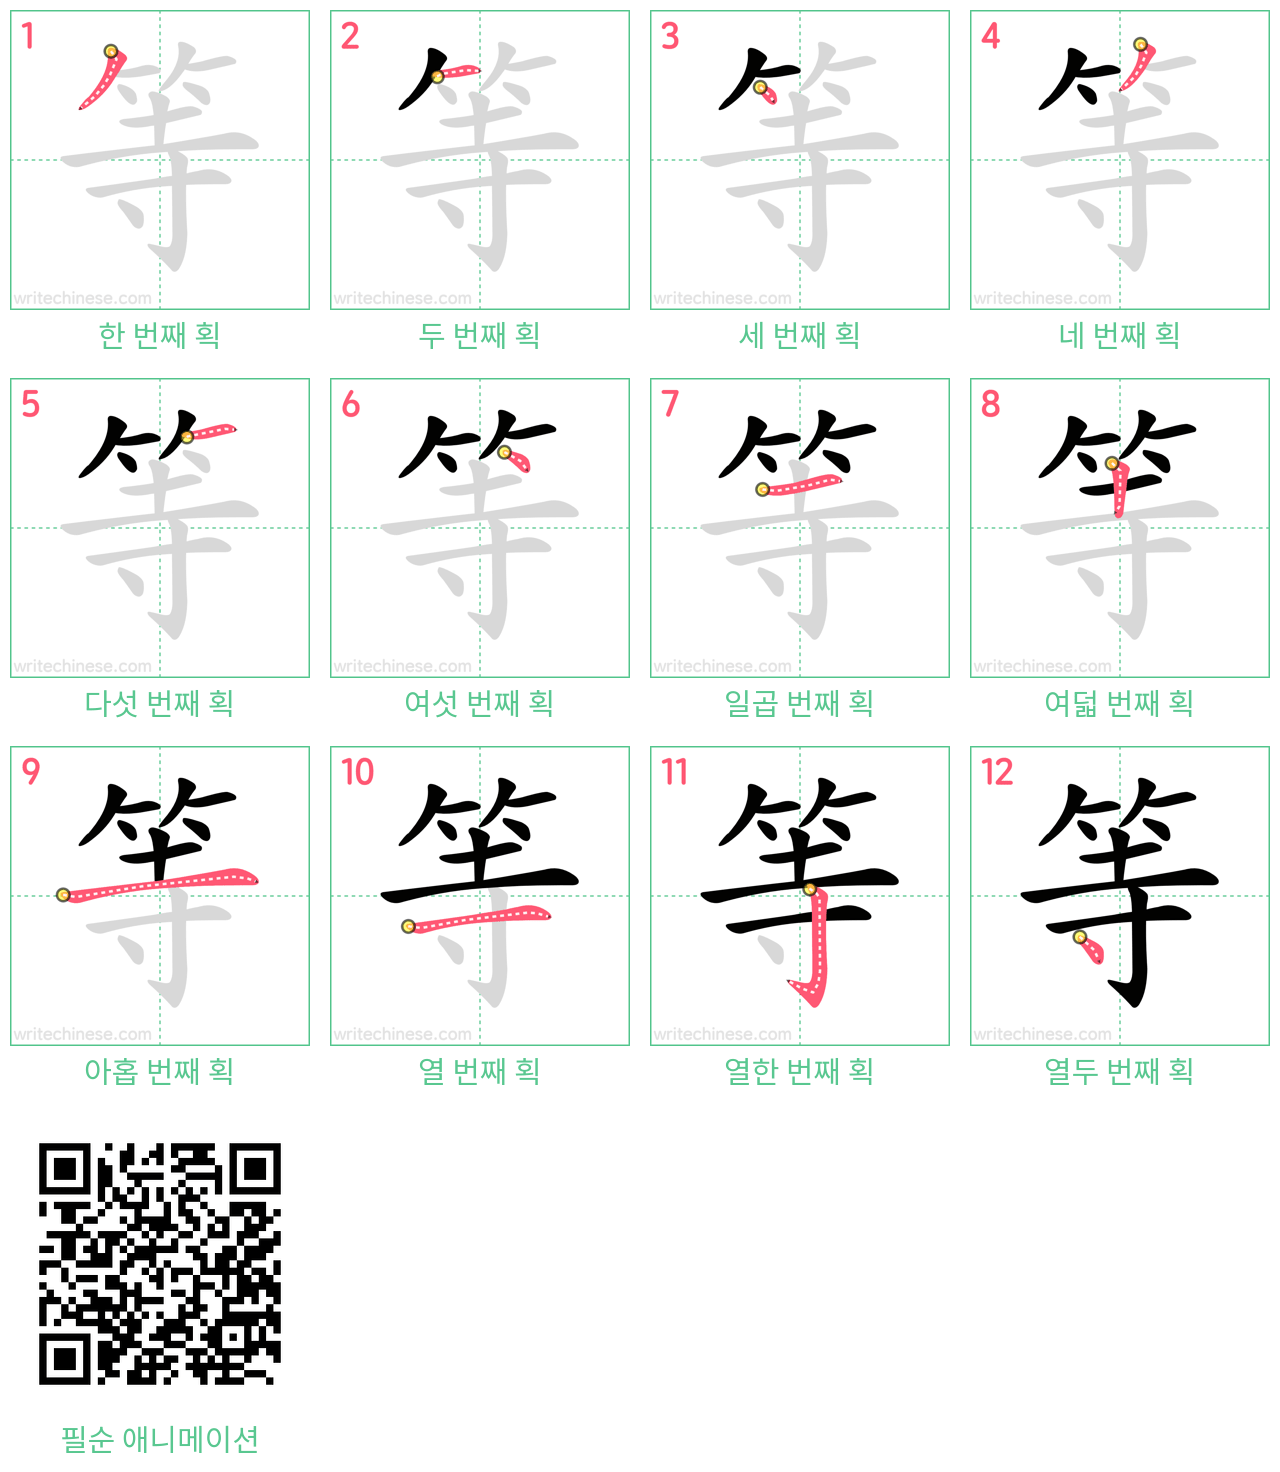 等 step-by-step stroke order diagrams